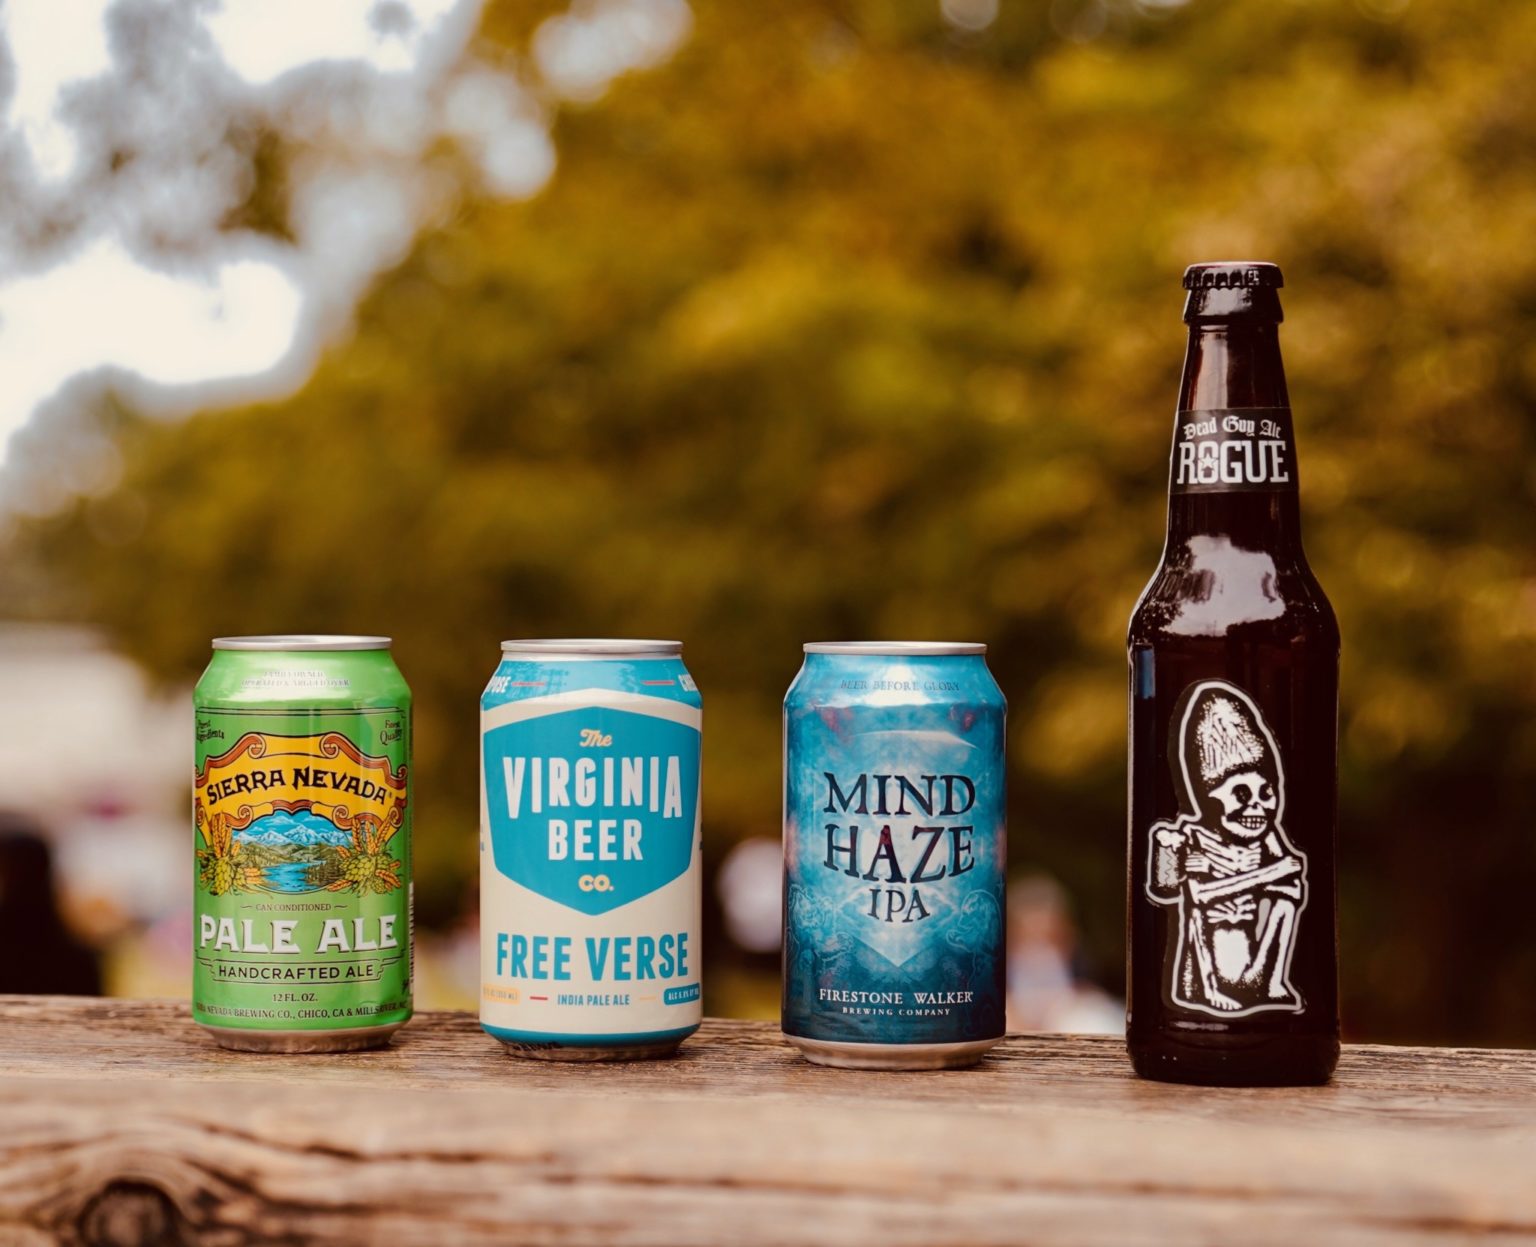 写真左から「Sierra Nevada Pale Ale（シエラネバダ ペール エール）」「Free Verse（フリーヴァース）」「Mind Haze
（マインド ヘイズ）」「Dead Guy Ale （デッドガイ エール）」。